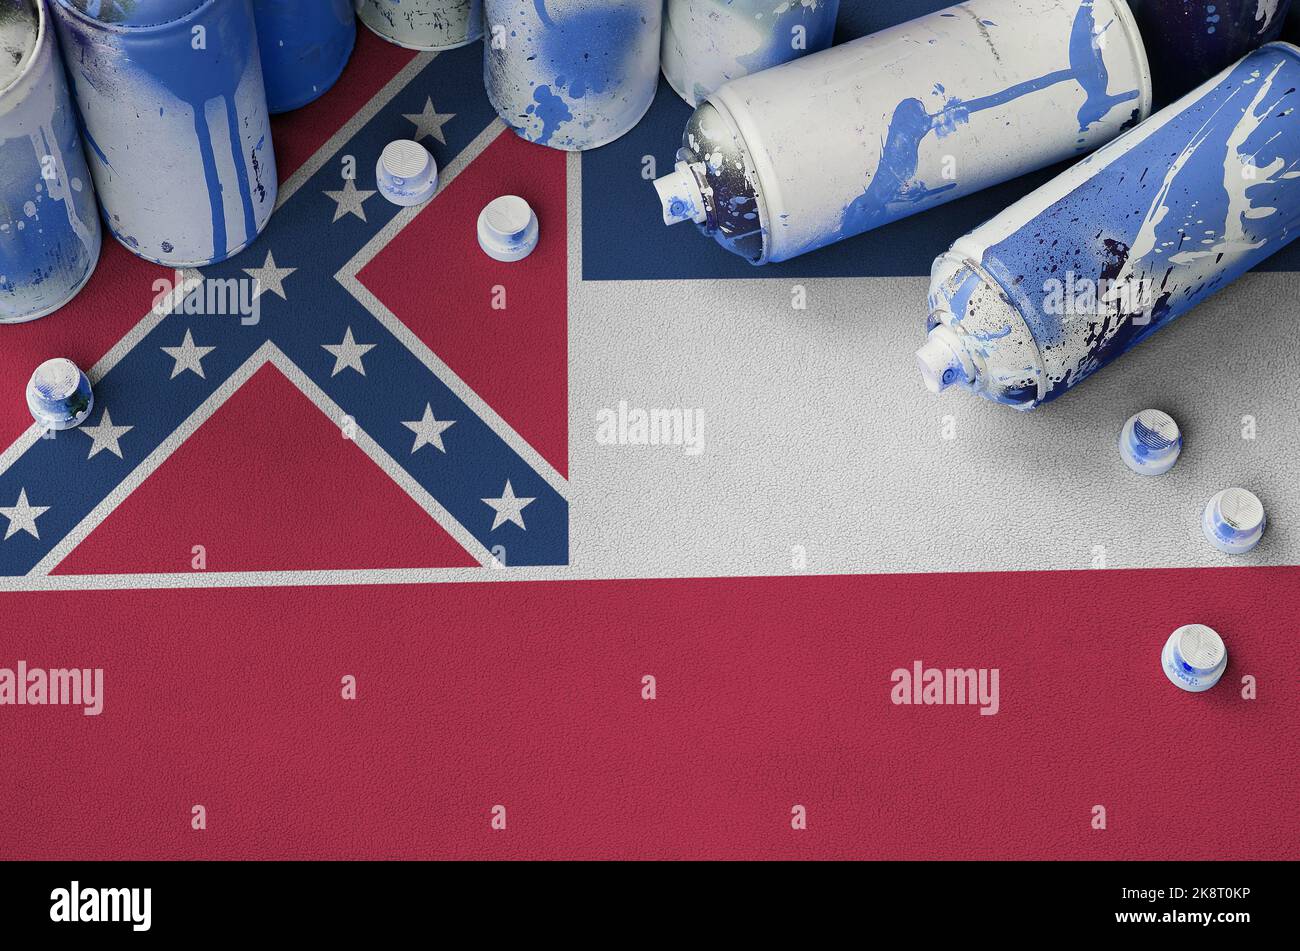 Mississippi neue US-Staatsflagge und nur wenige gebrauchte Spraydosen für die Graffiti-Malerei. Street Art Kultur Konzept, Vandalismus Probleme Stockfoto